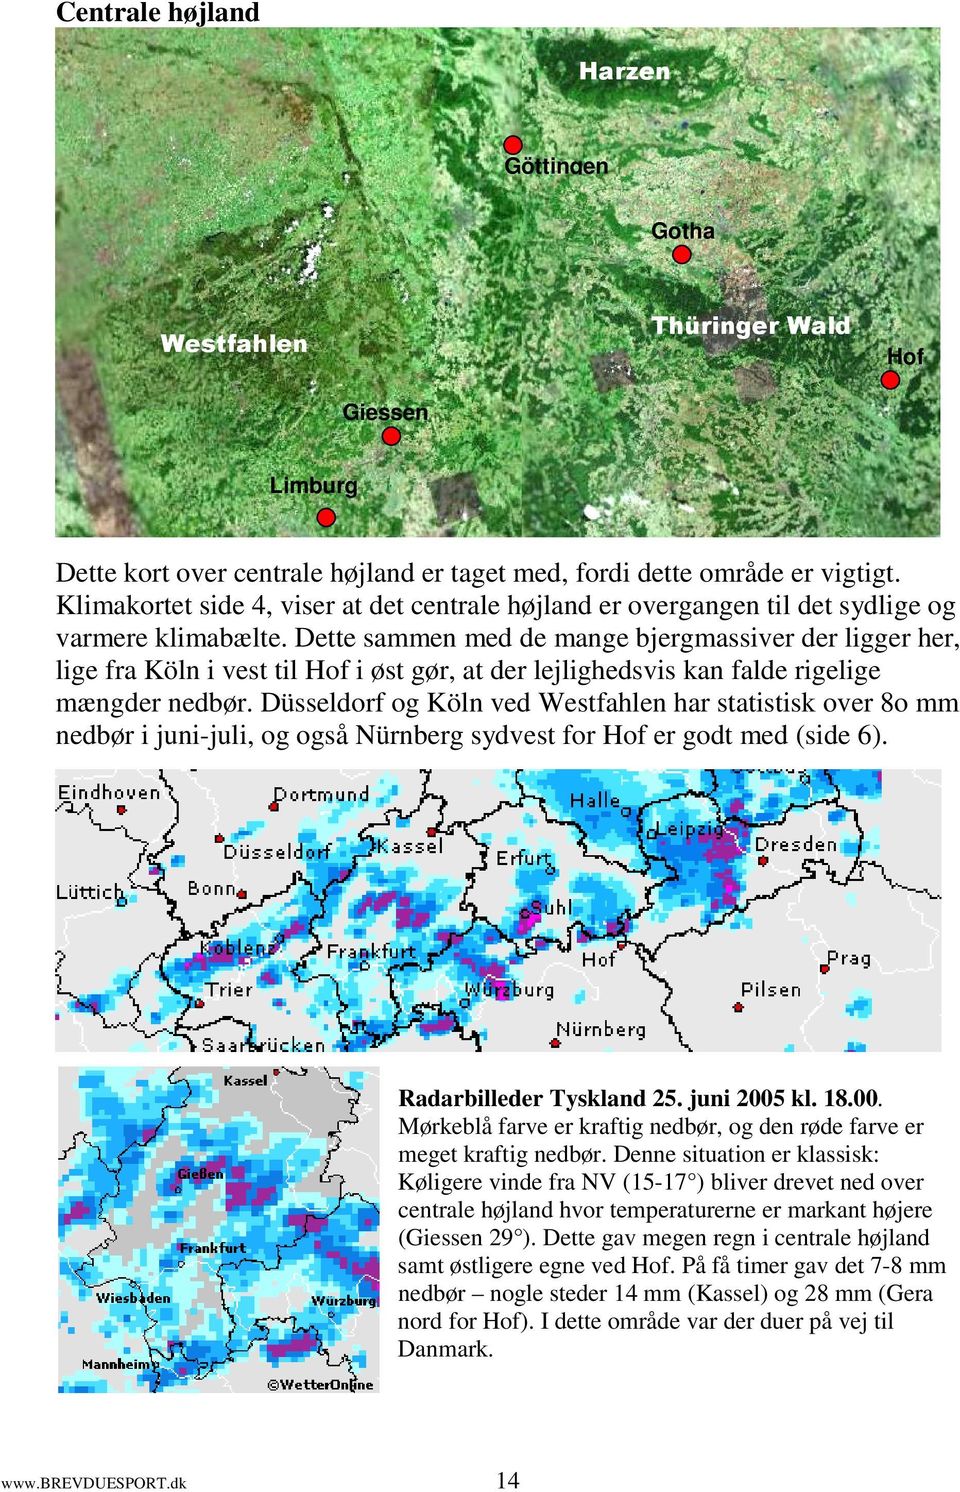 Dette sammen med de mange bjergmassiver der ligger her, lige fra Köln i vest til Hof i øst gør, at der lejlighedsvis kan falde rigelige mængder nedbør.